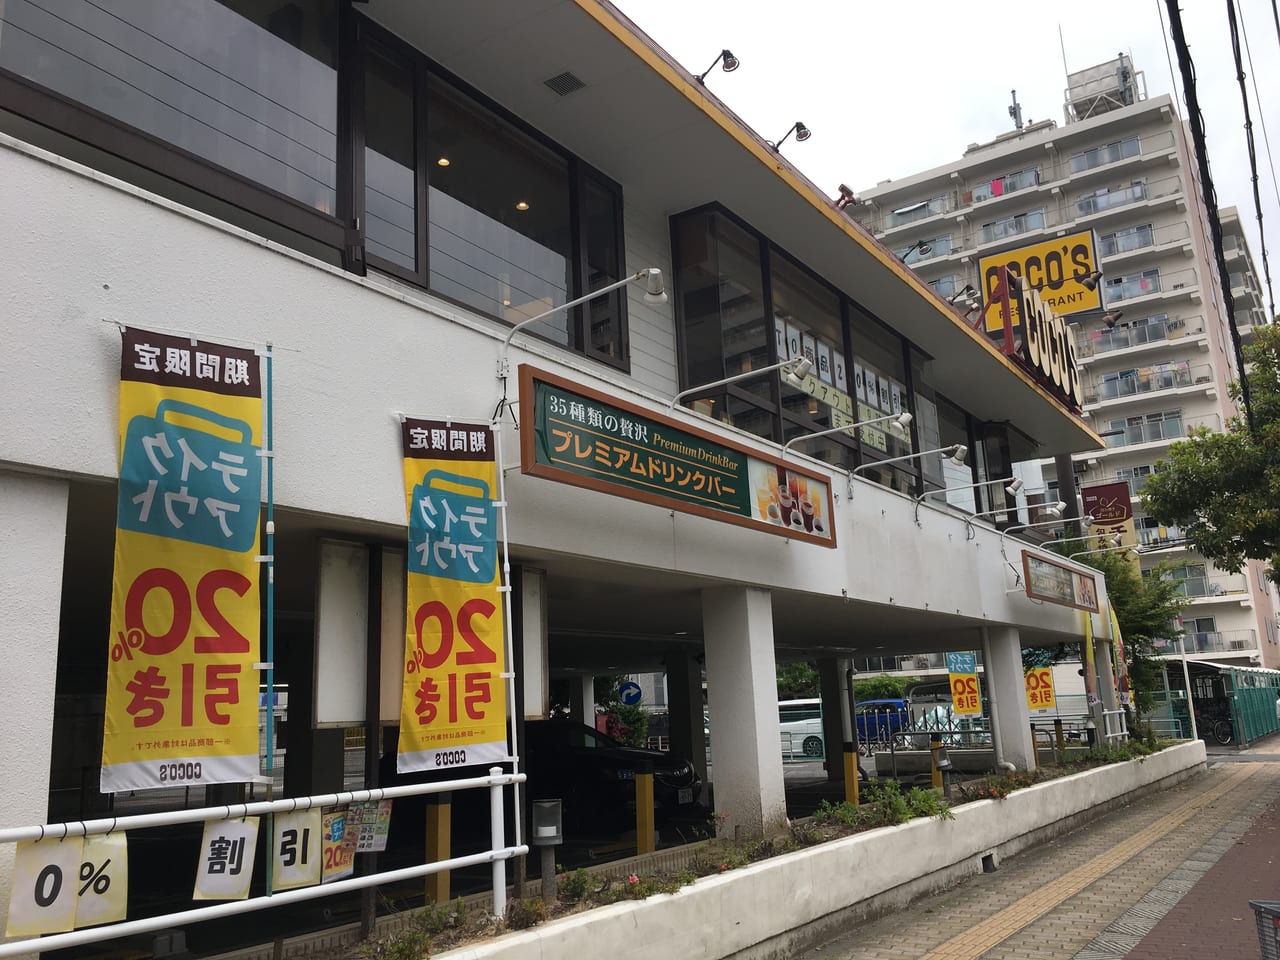 大阪市城東区 ファミリーレストランのココスで期間限定テイクアウト 割引キャンペーンを実施中です 号外net 鶴見 城東